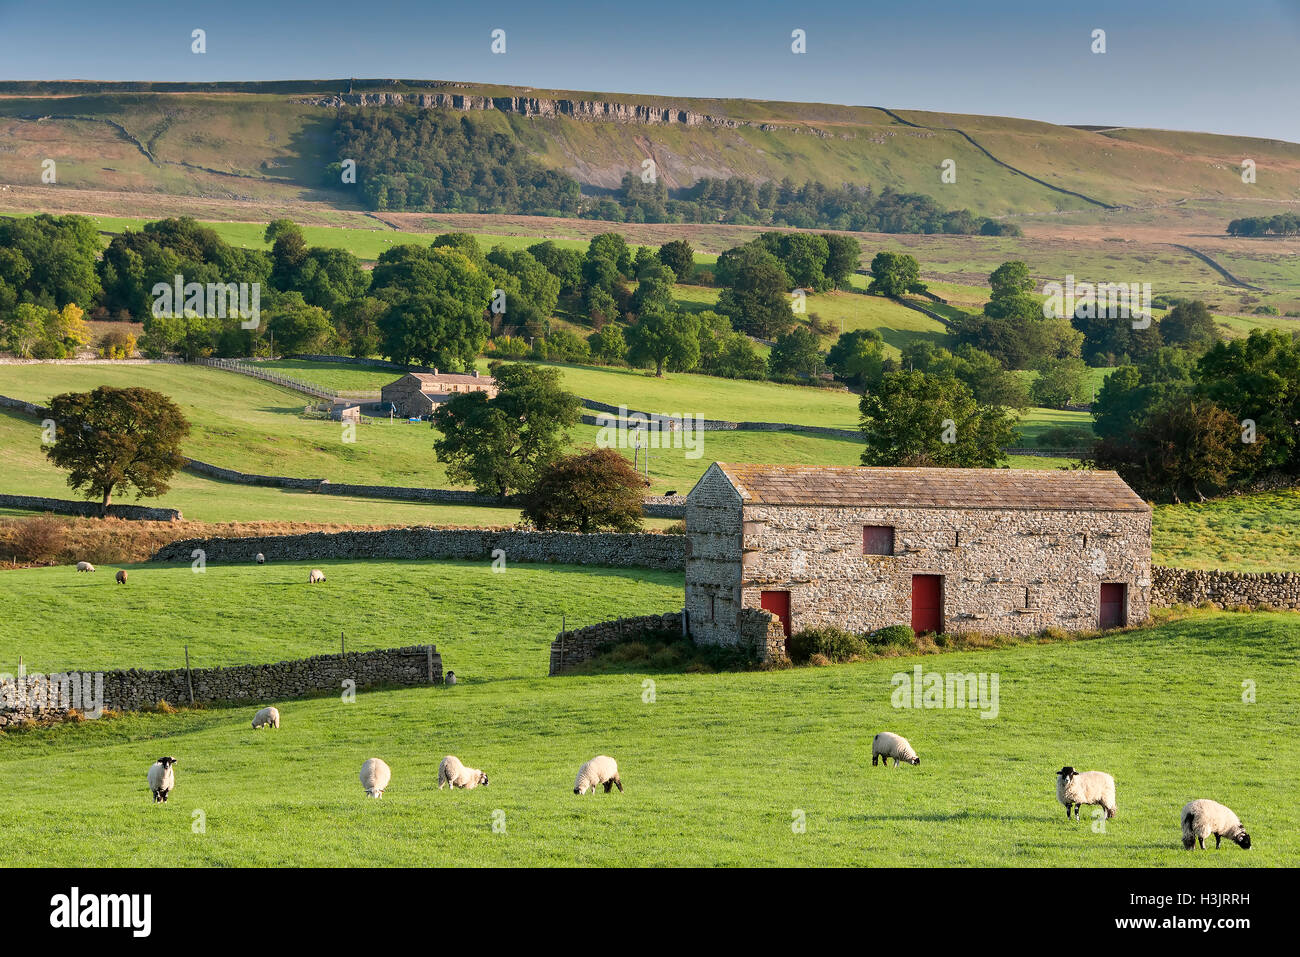 Troupeau de moutons & grange en pierre, Wensleydale, Yorkshire Dales National Park, Yorkshire, Angleterre, Royaume-Uni Banque D'Images